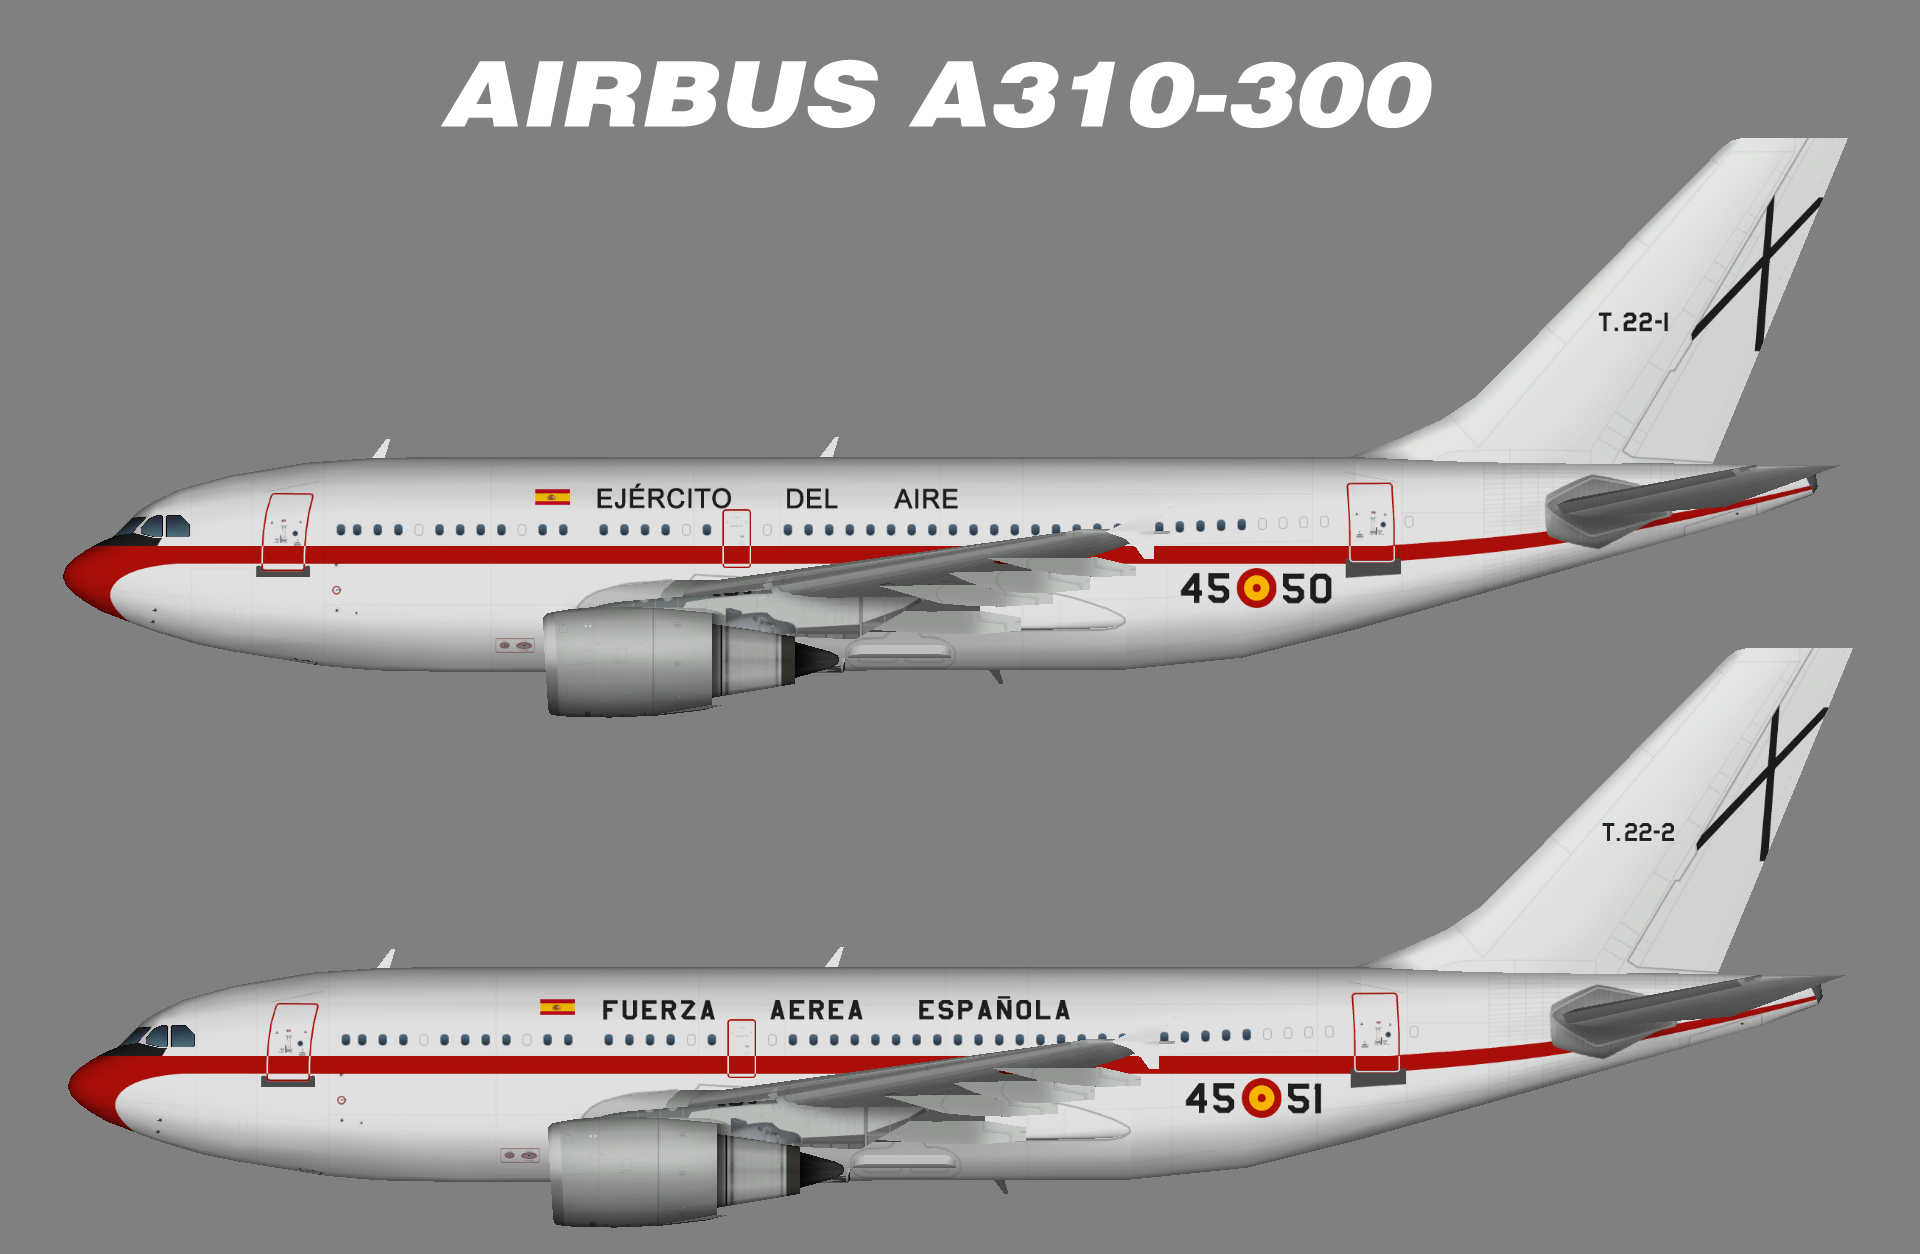 Fuerza Aerea Espanola A310-300